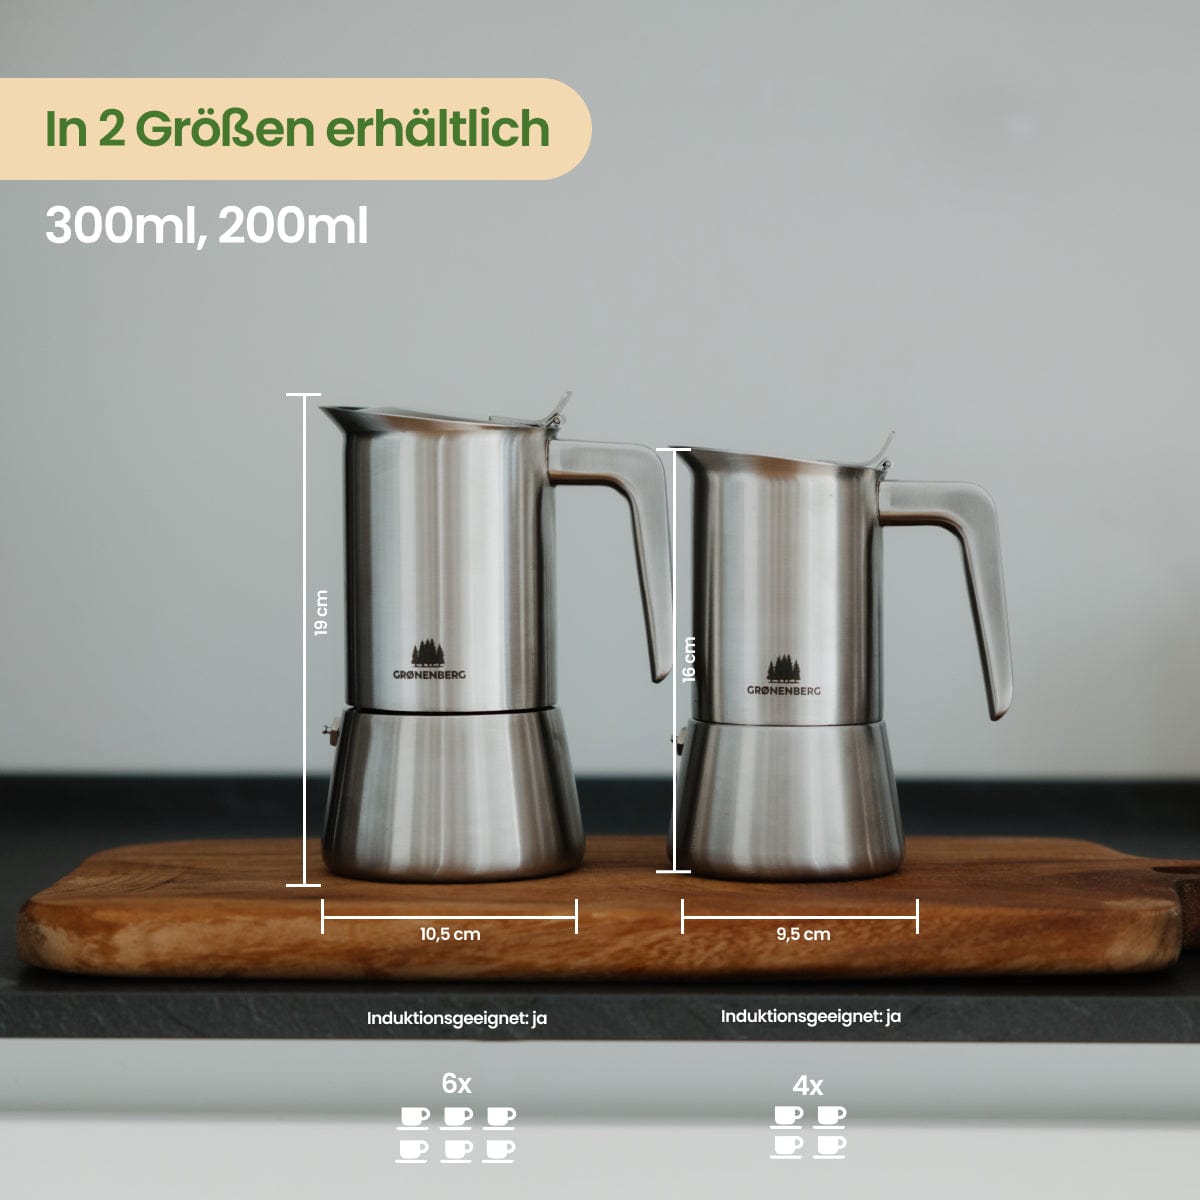 #SF Espressokocher Edelstahl 4 oder 6 Tassen (200-300ml) | Induktion